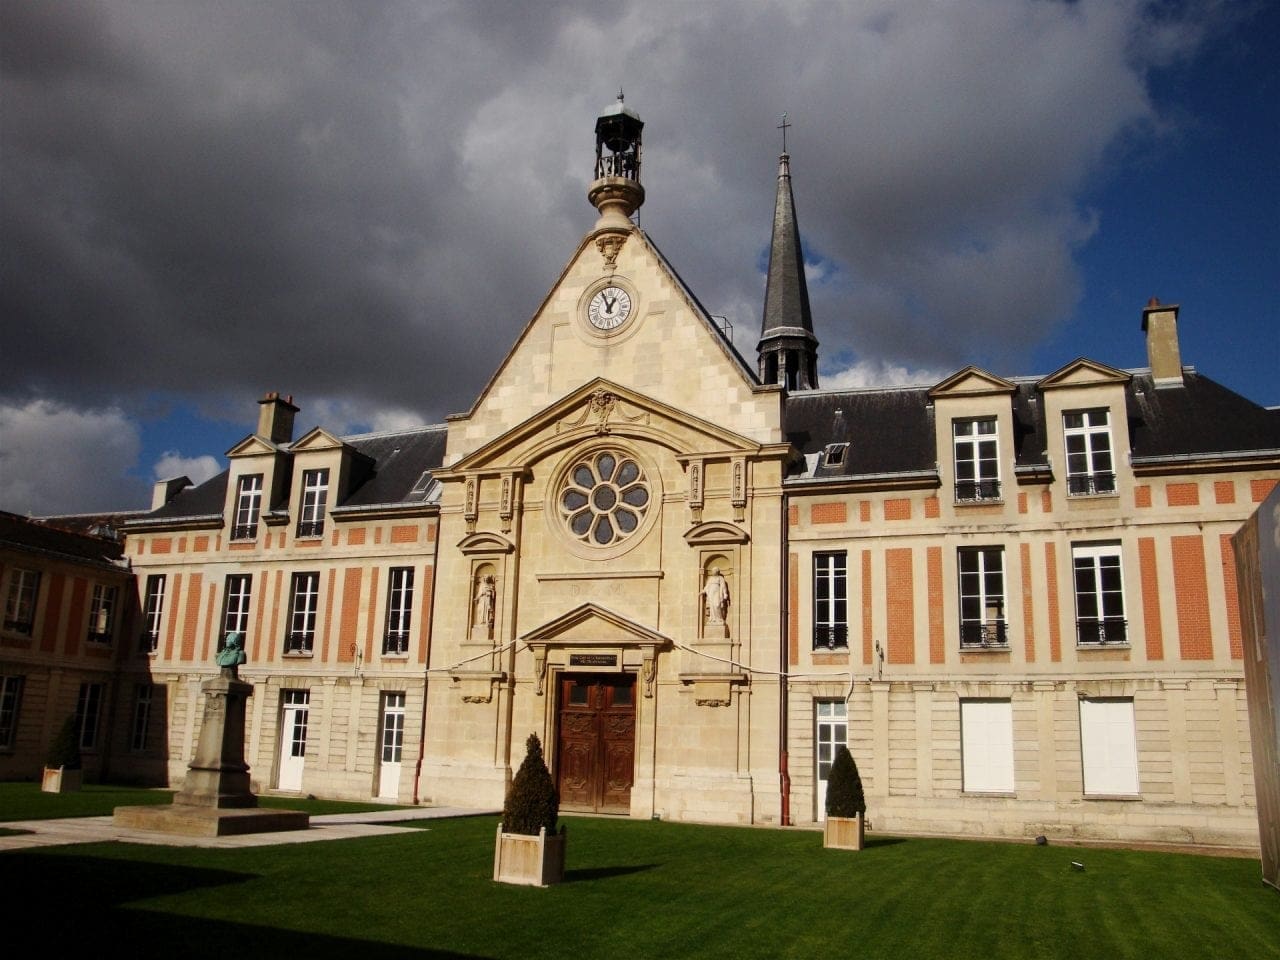 Laennec - Aportul industriei luxului la cladirea sau restaurarea patrimoniului arhitectural